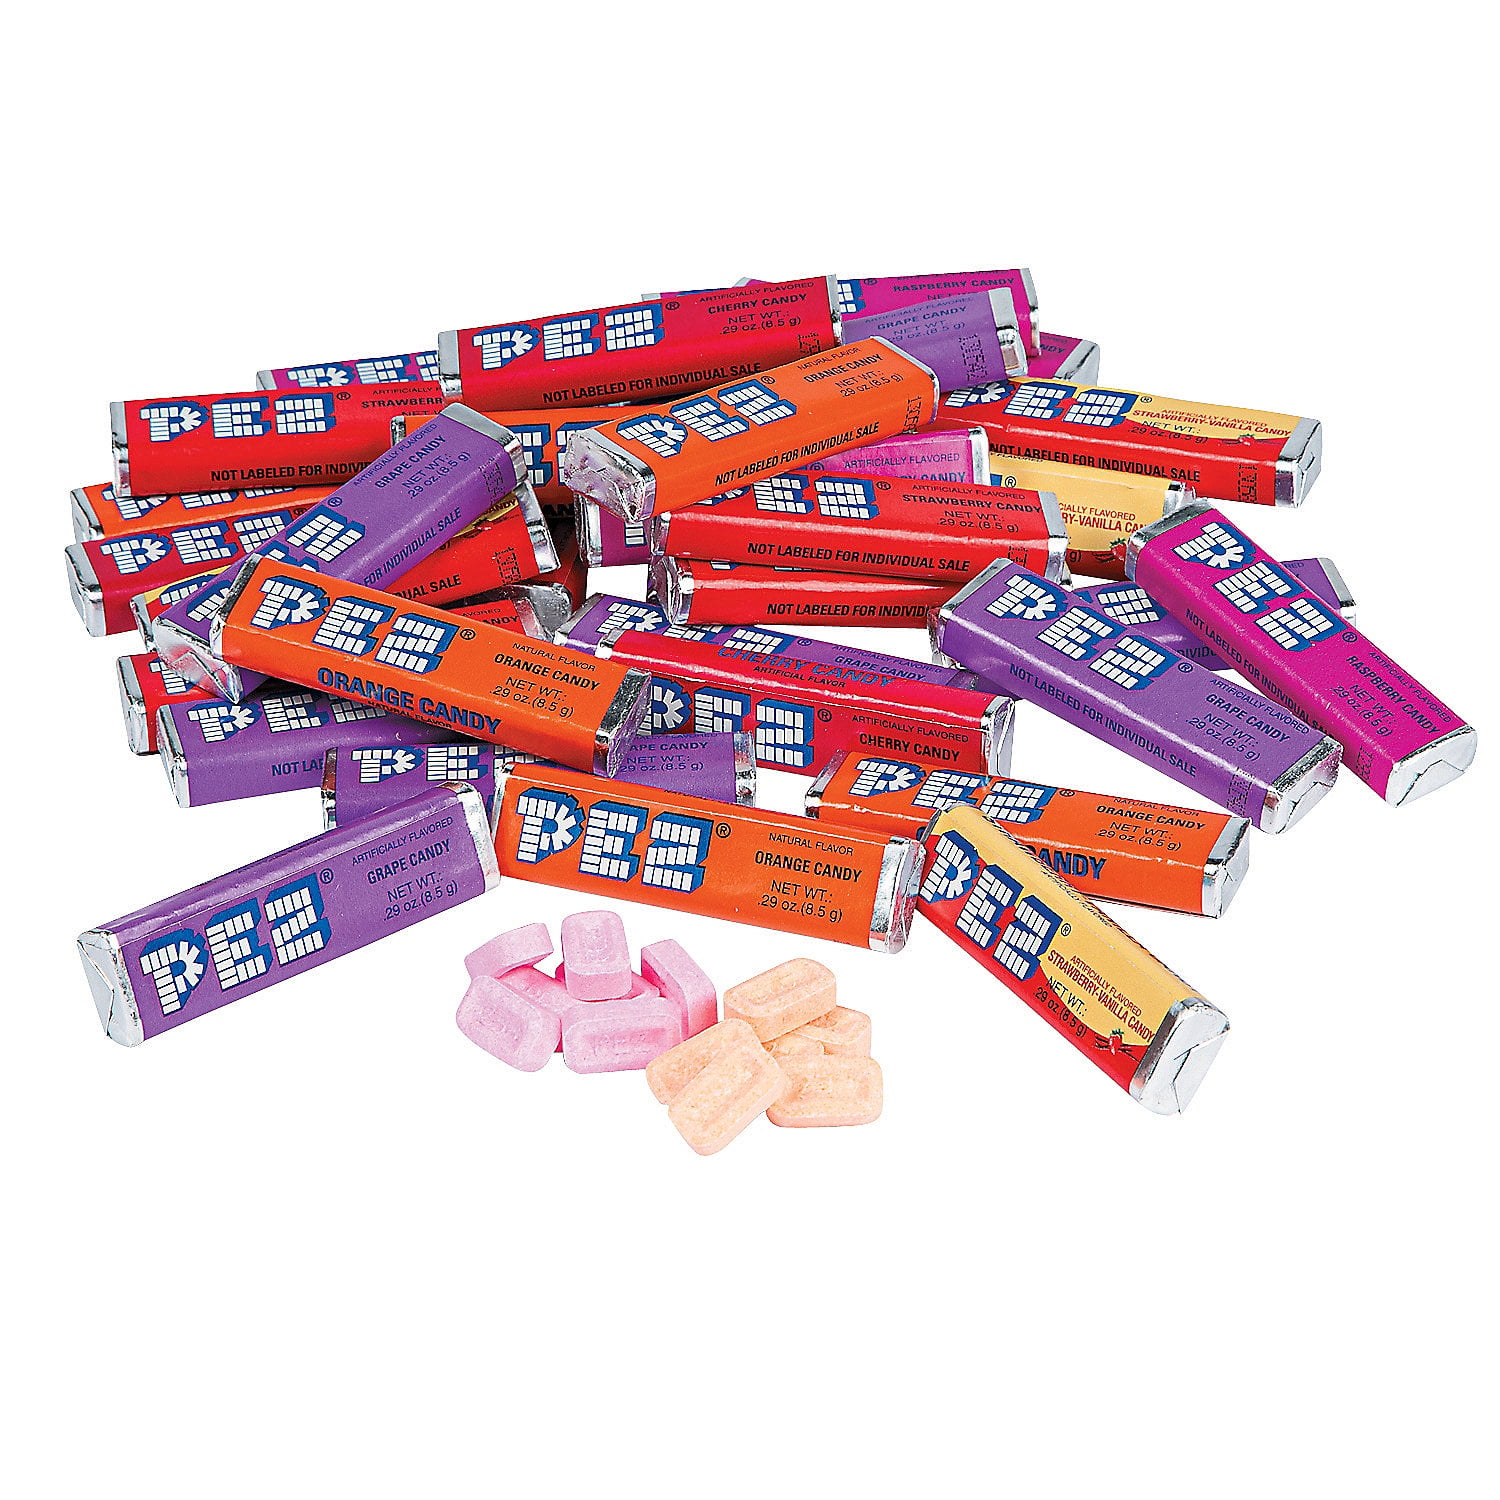 PEZ Candy Roll USA  Recharges de bonbons PEZ importées des USA